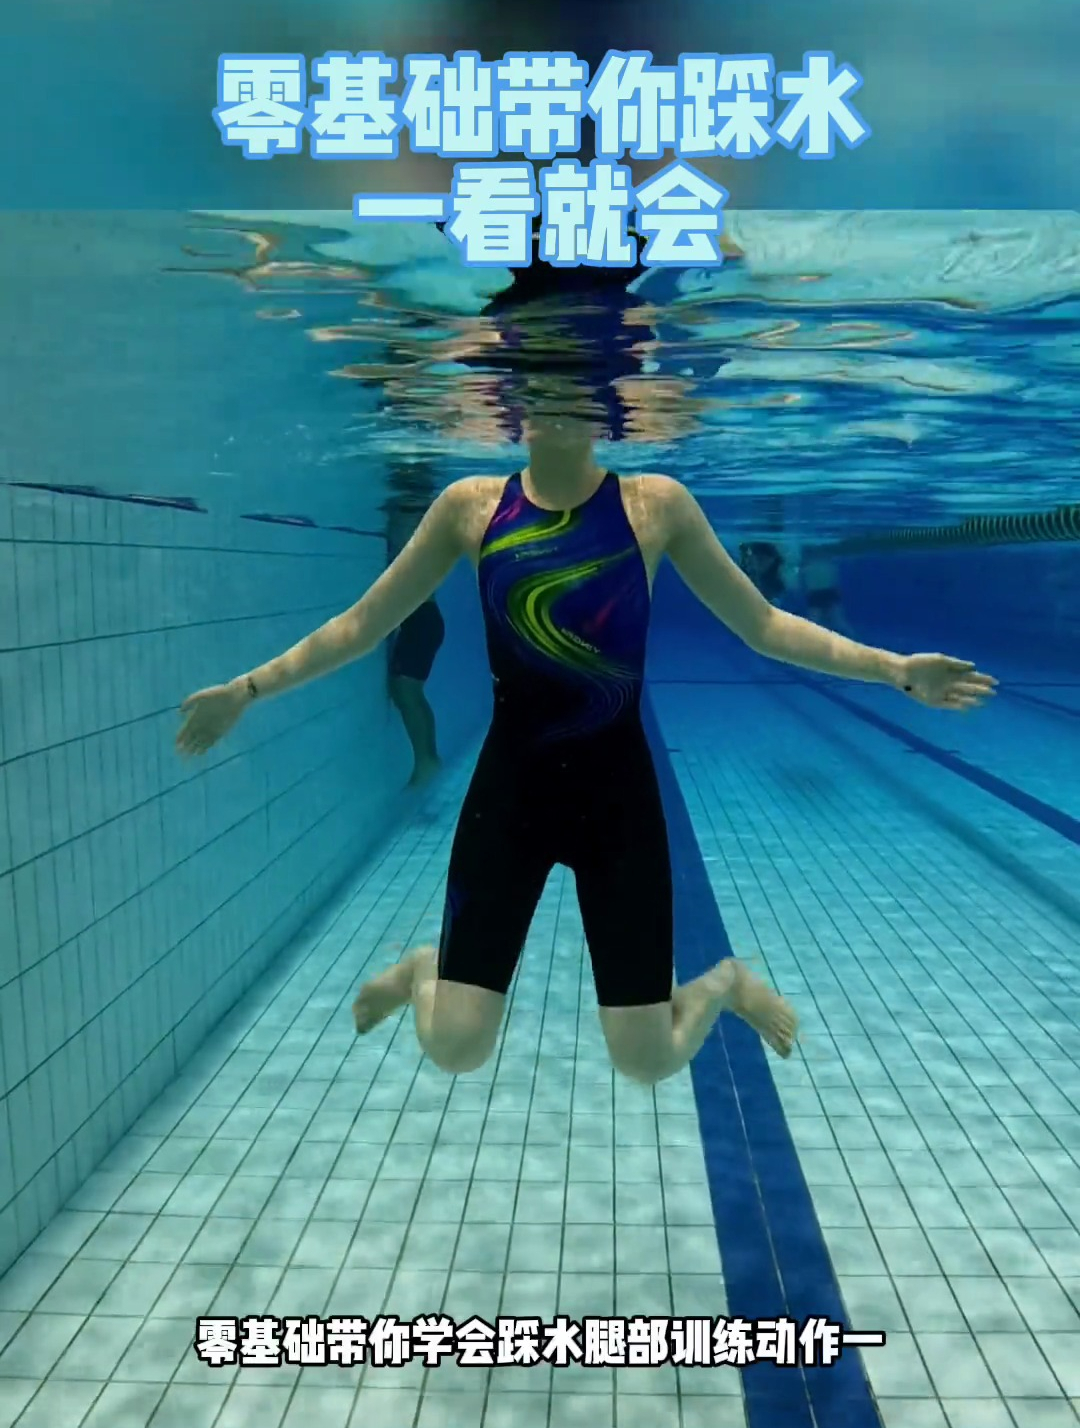 0基础学游泳,10秒教你防溺水小技巧之踩水